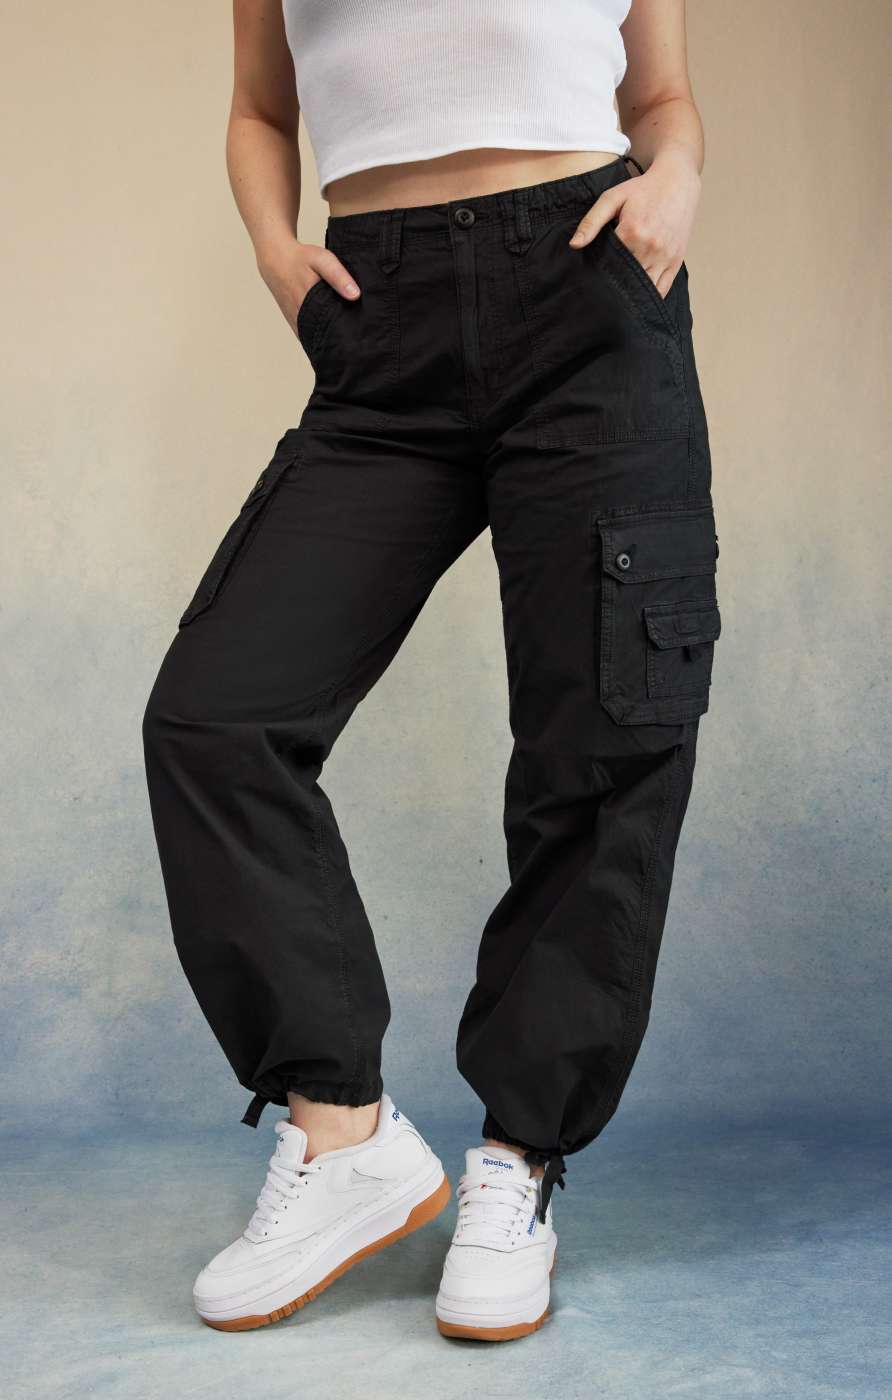 Model in black jogger pants